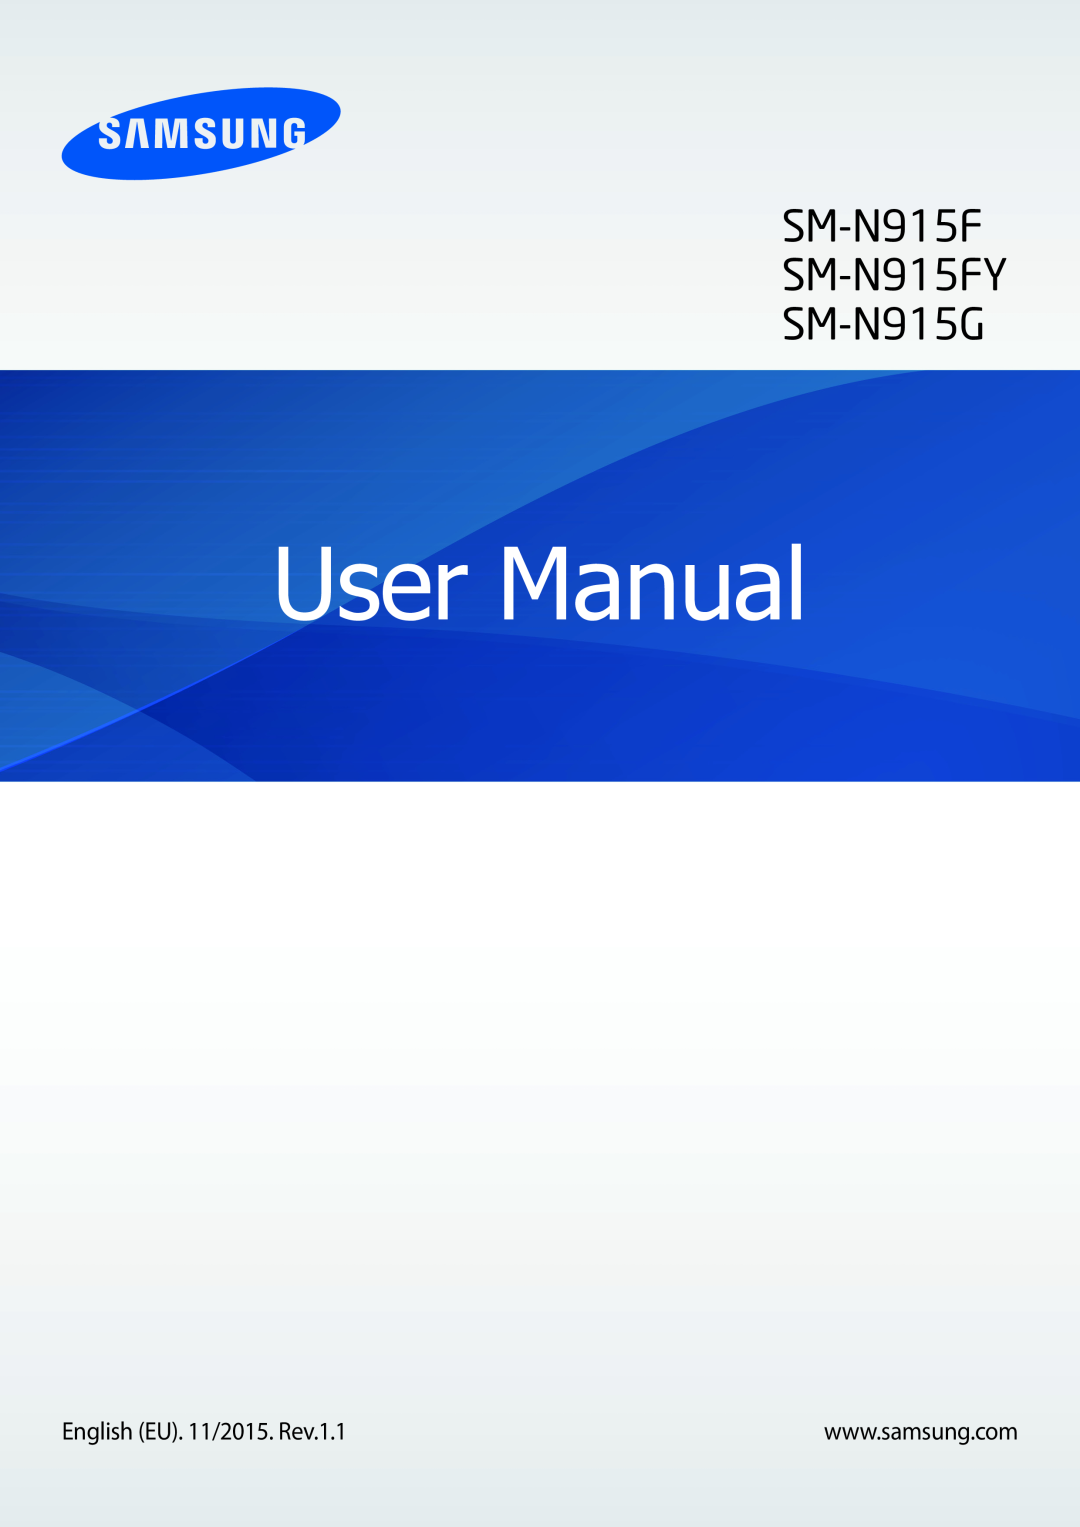 Samsung SM-N915FZKYATO, SM-N915FZWYEUR, SM-N915FZWYTPH, SM-N915FZKYTPH manual User Manual, SM-N915F SM-N915FY SM-N915G 